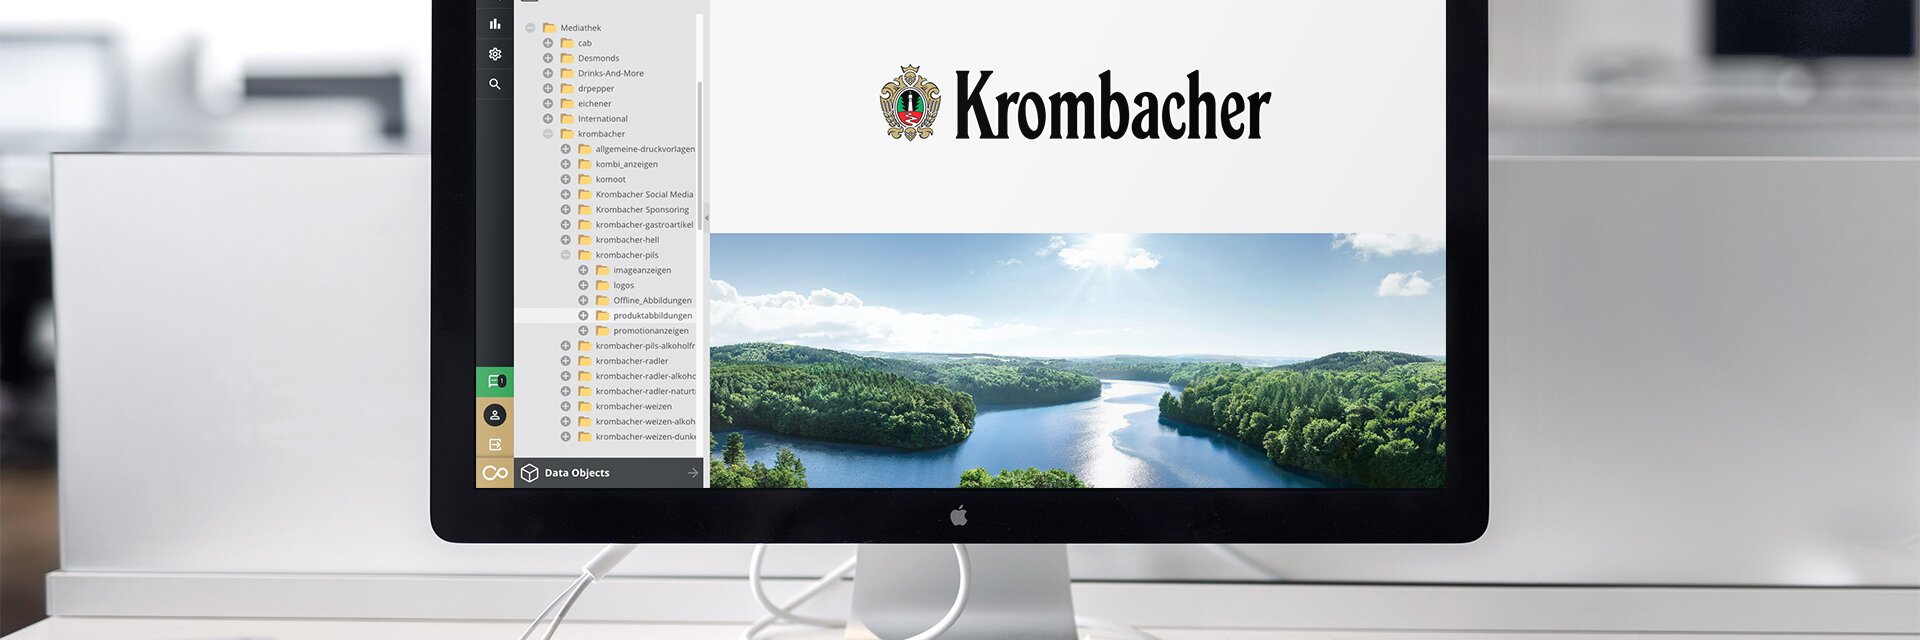 Case Study: Krombacher Mediathek - Impression #1